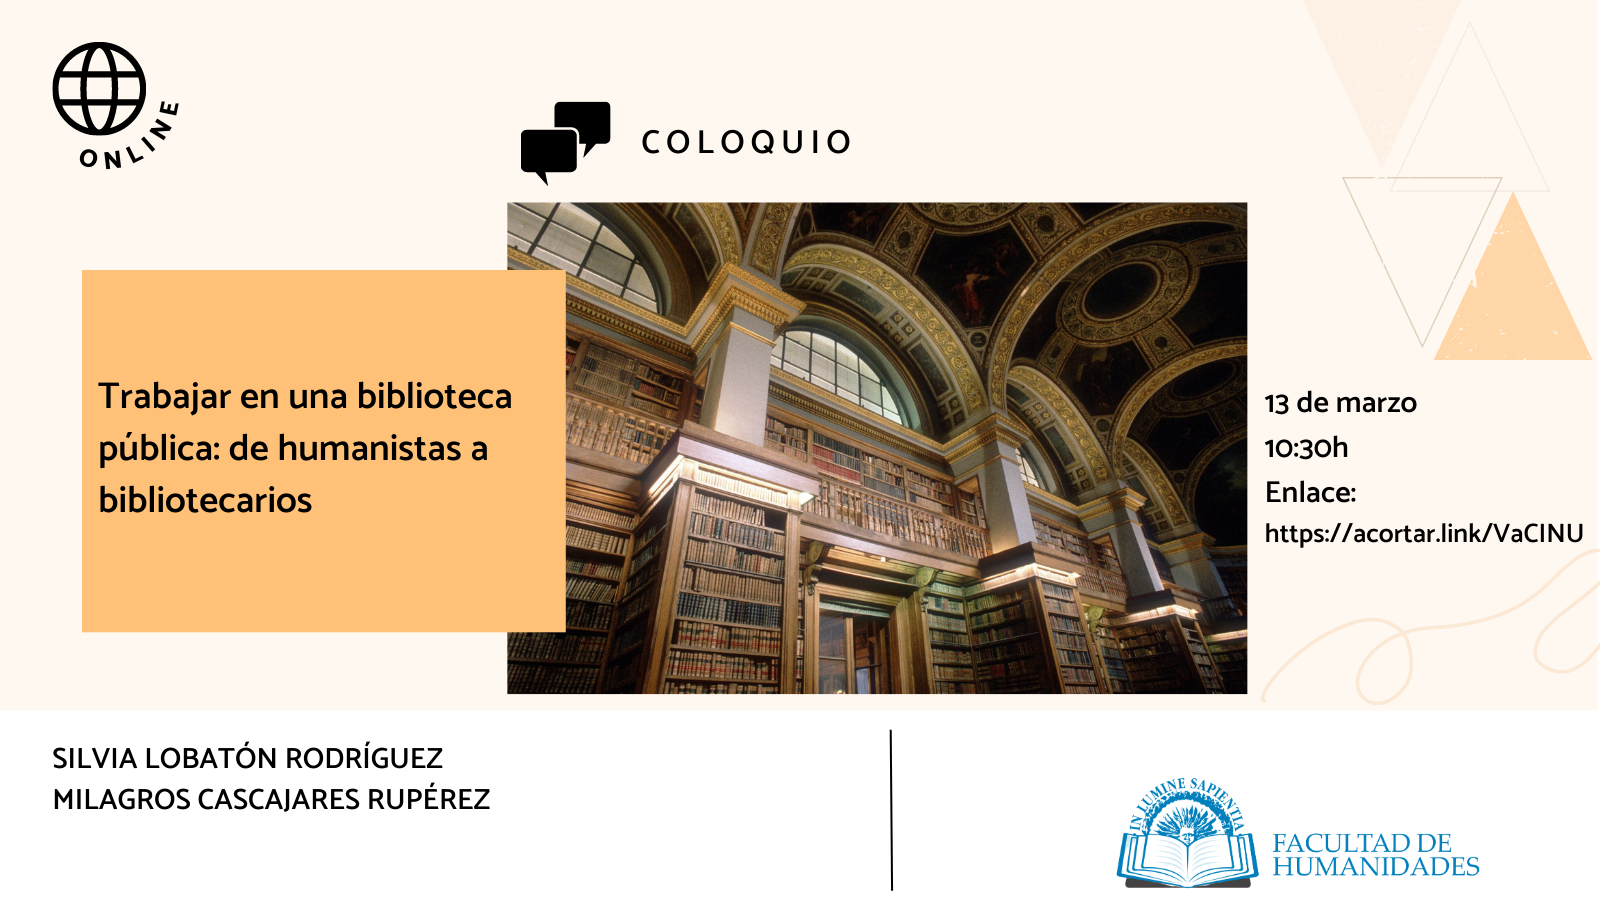 La Facultad de Humanidades, Carlos Vicente Domínguez y Ángela Palma Ortiz organizan el coloquio ‘Trabajar en una biblioteca pública: de humanistas a bibliotecarios’.